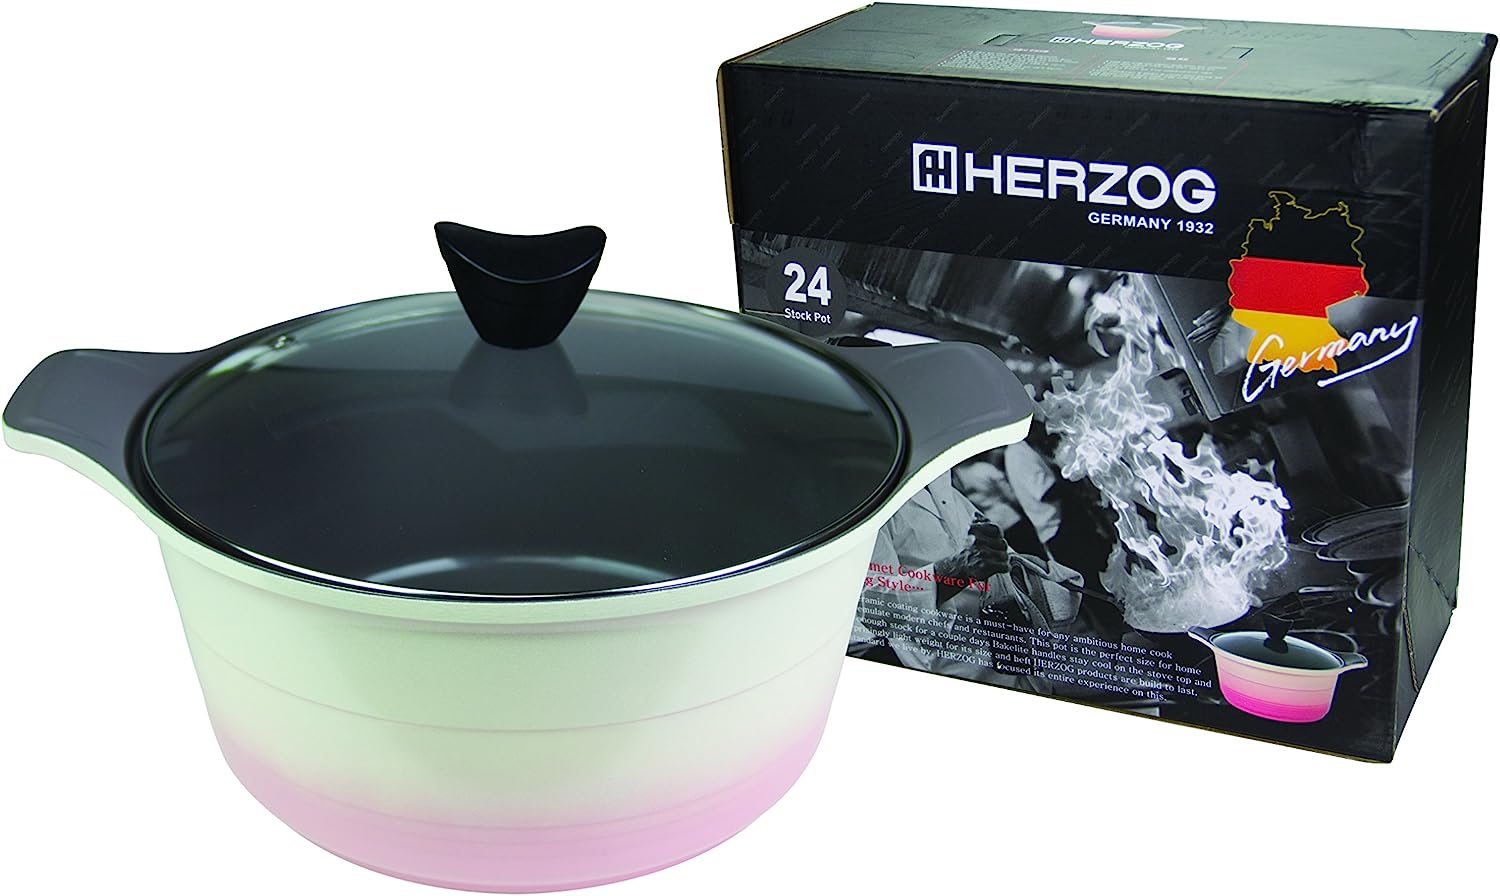 Herzog Deep Pot, 24cm